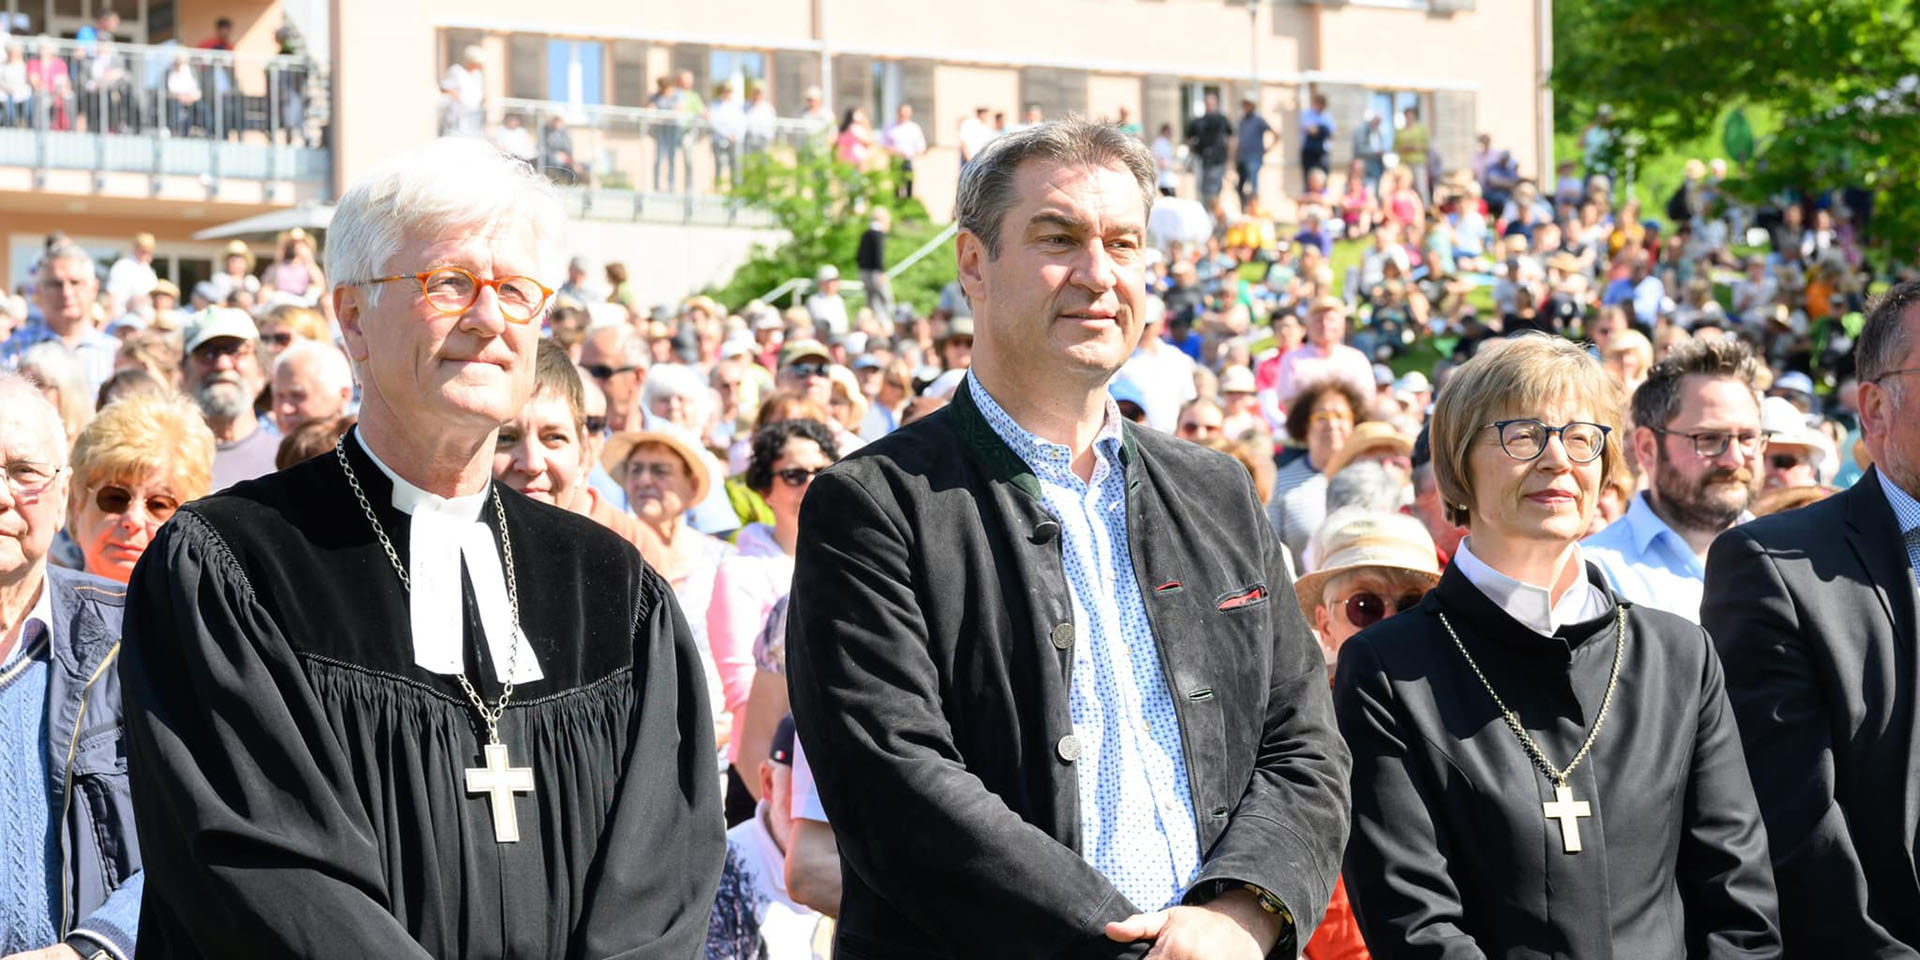 Landesbischof Heinrich Bedford-Strohm, Ministerpräsident Markus Söder und Regionalbischöfin Gisela Bornowski beim Hesselberg-Kirchentag